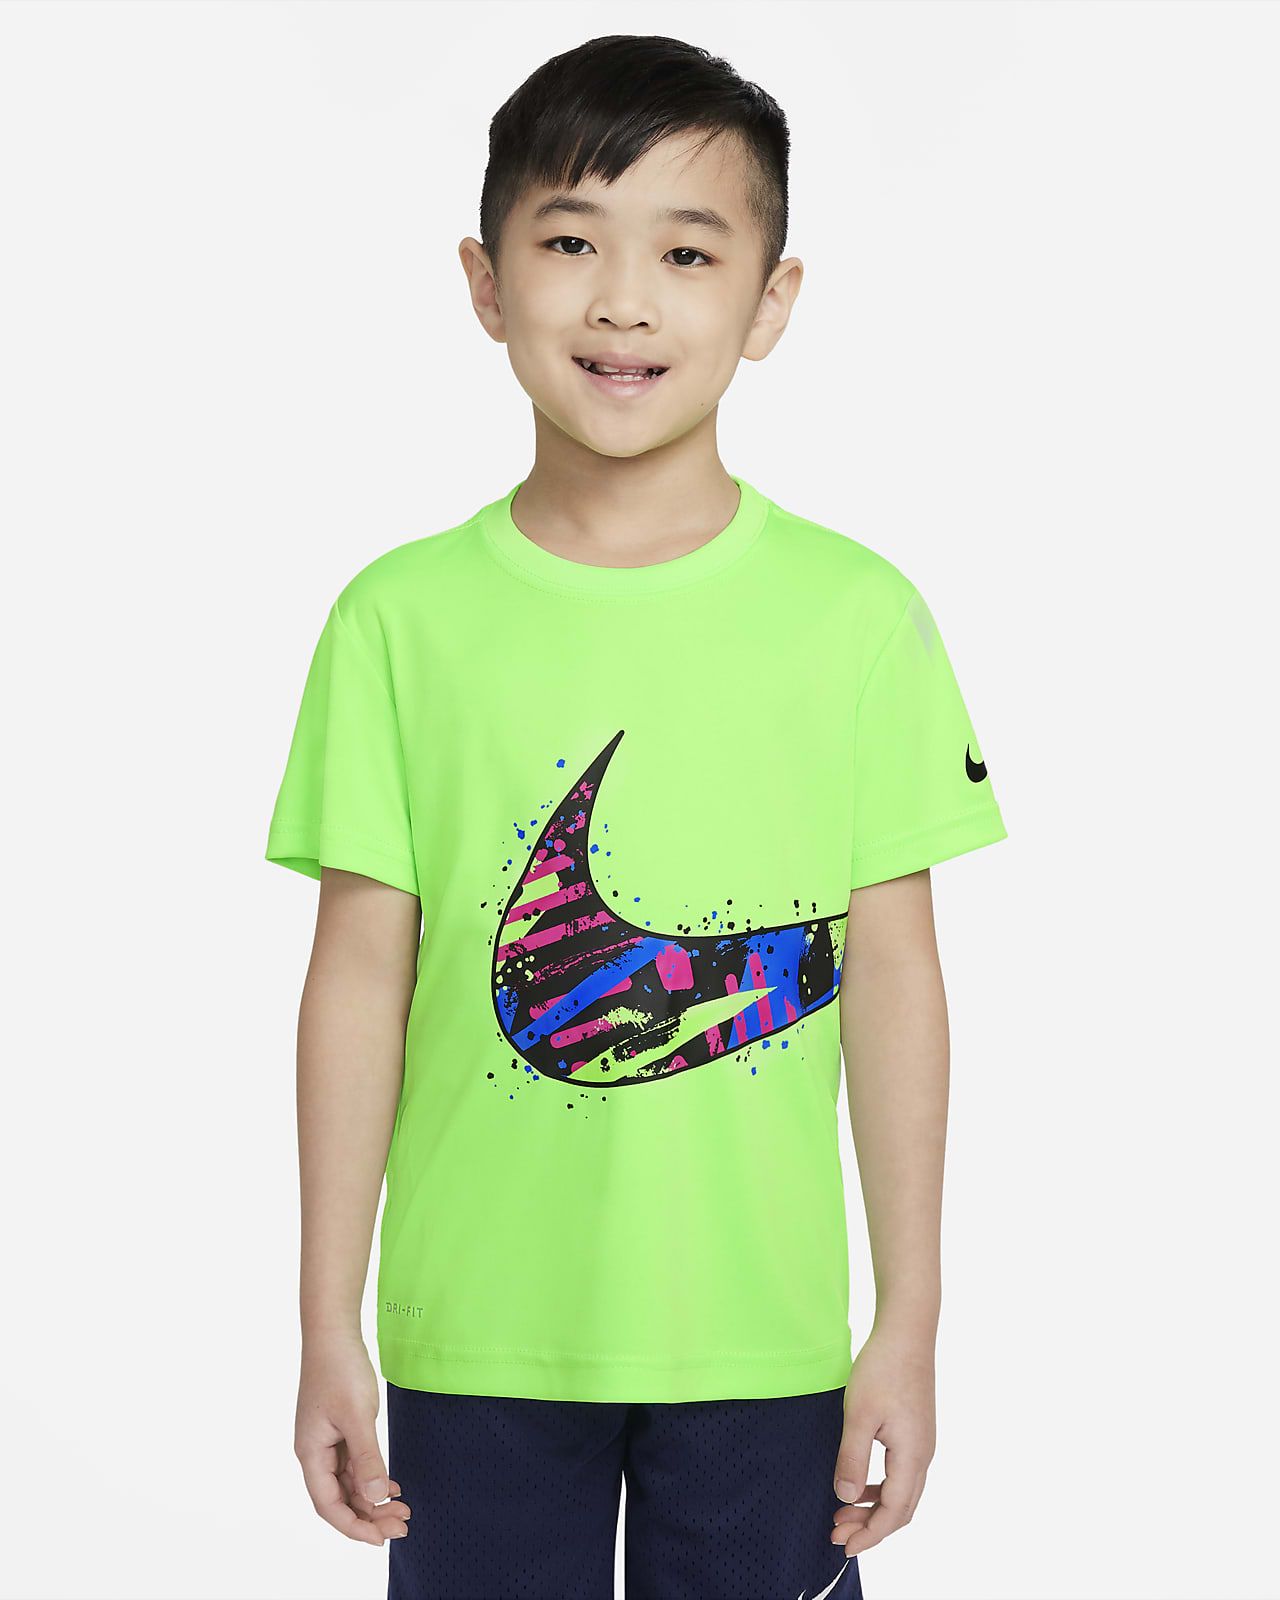 Nike Dri-Fit Little Kids' T-Shirt. Nike.com | Nike (US)